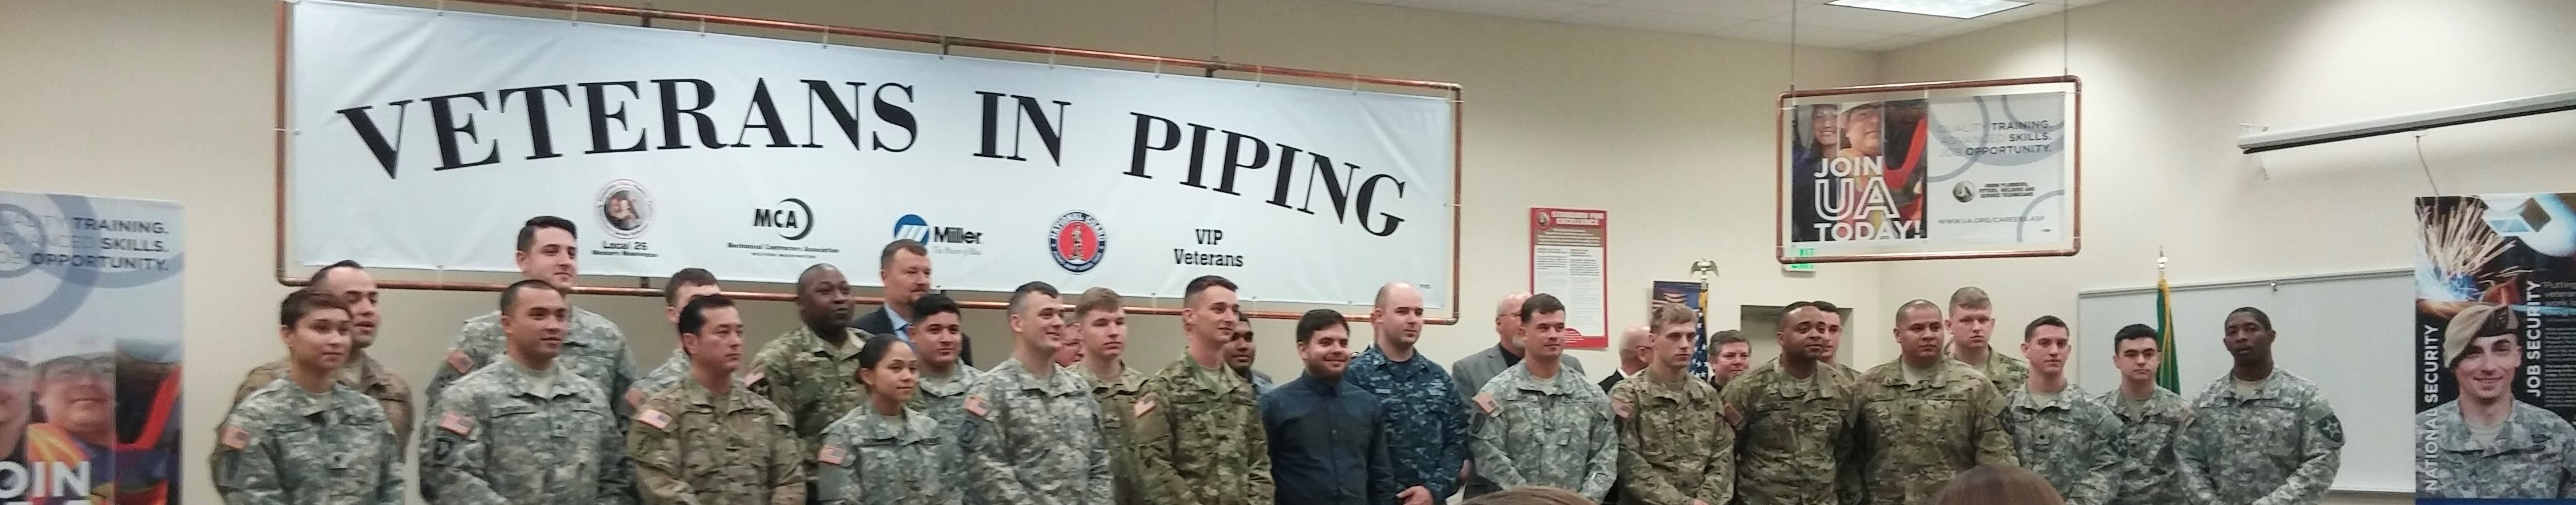 UA VIP Program sets Army Specialist up for a lifelong HVAC union career